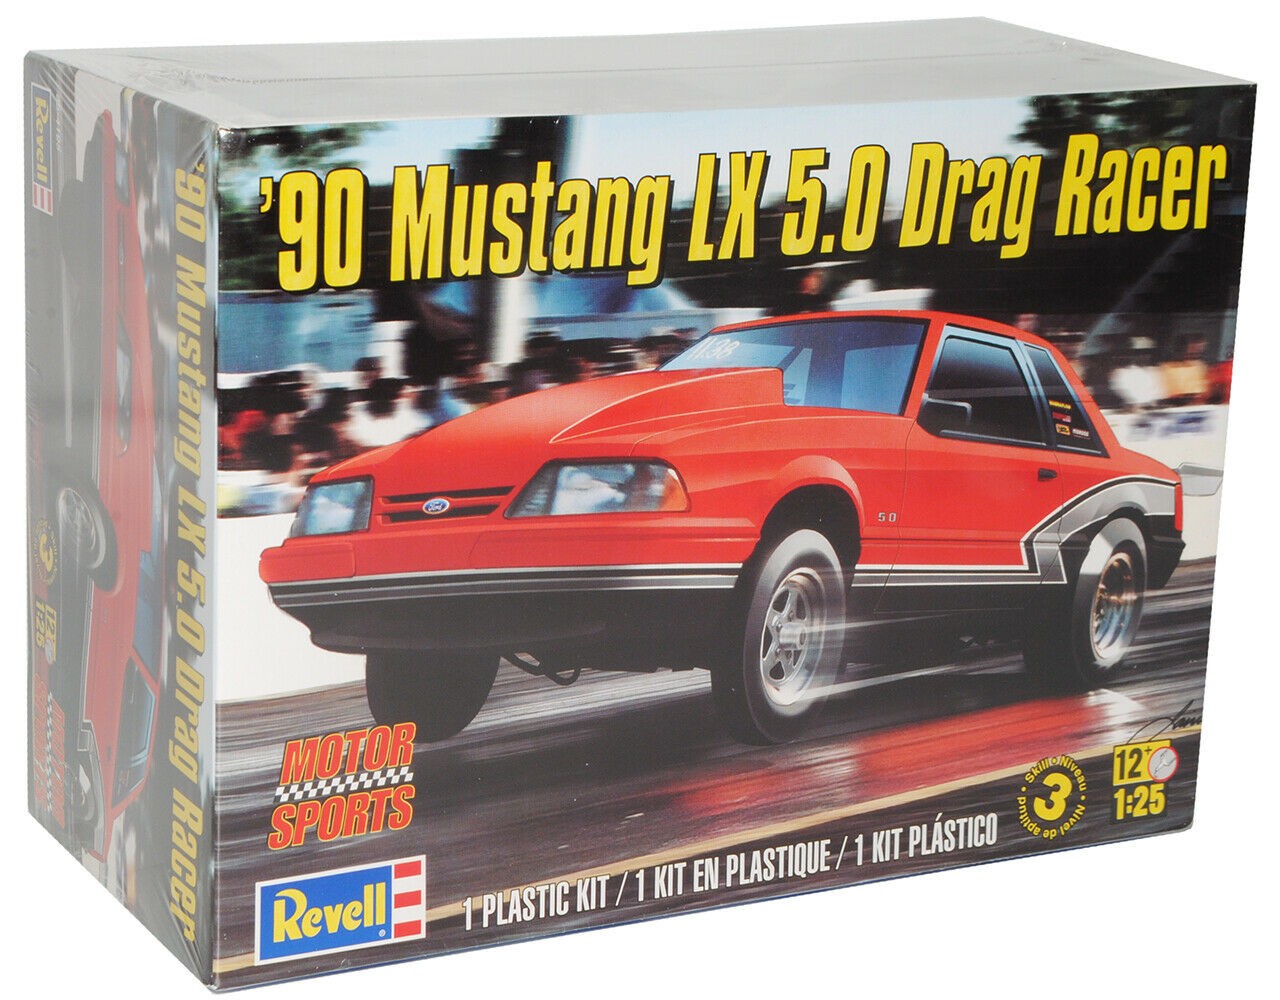 Revell 85-4195 Mustang LX 5.0 1990 Drag Racer 